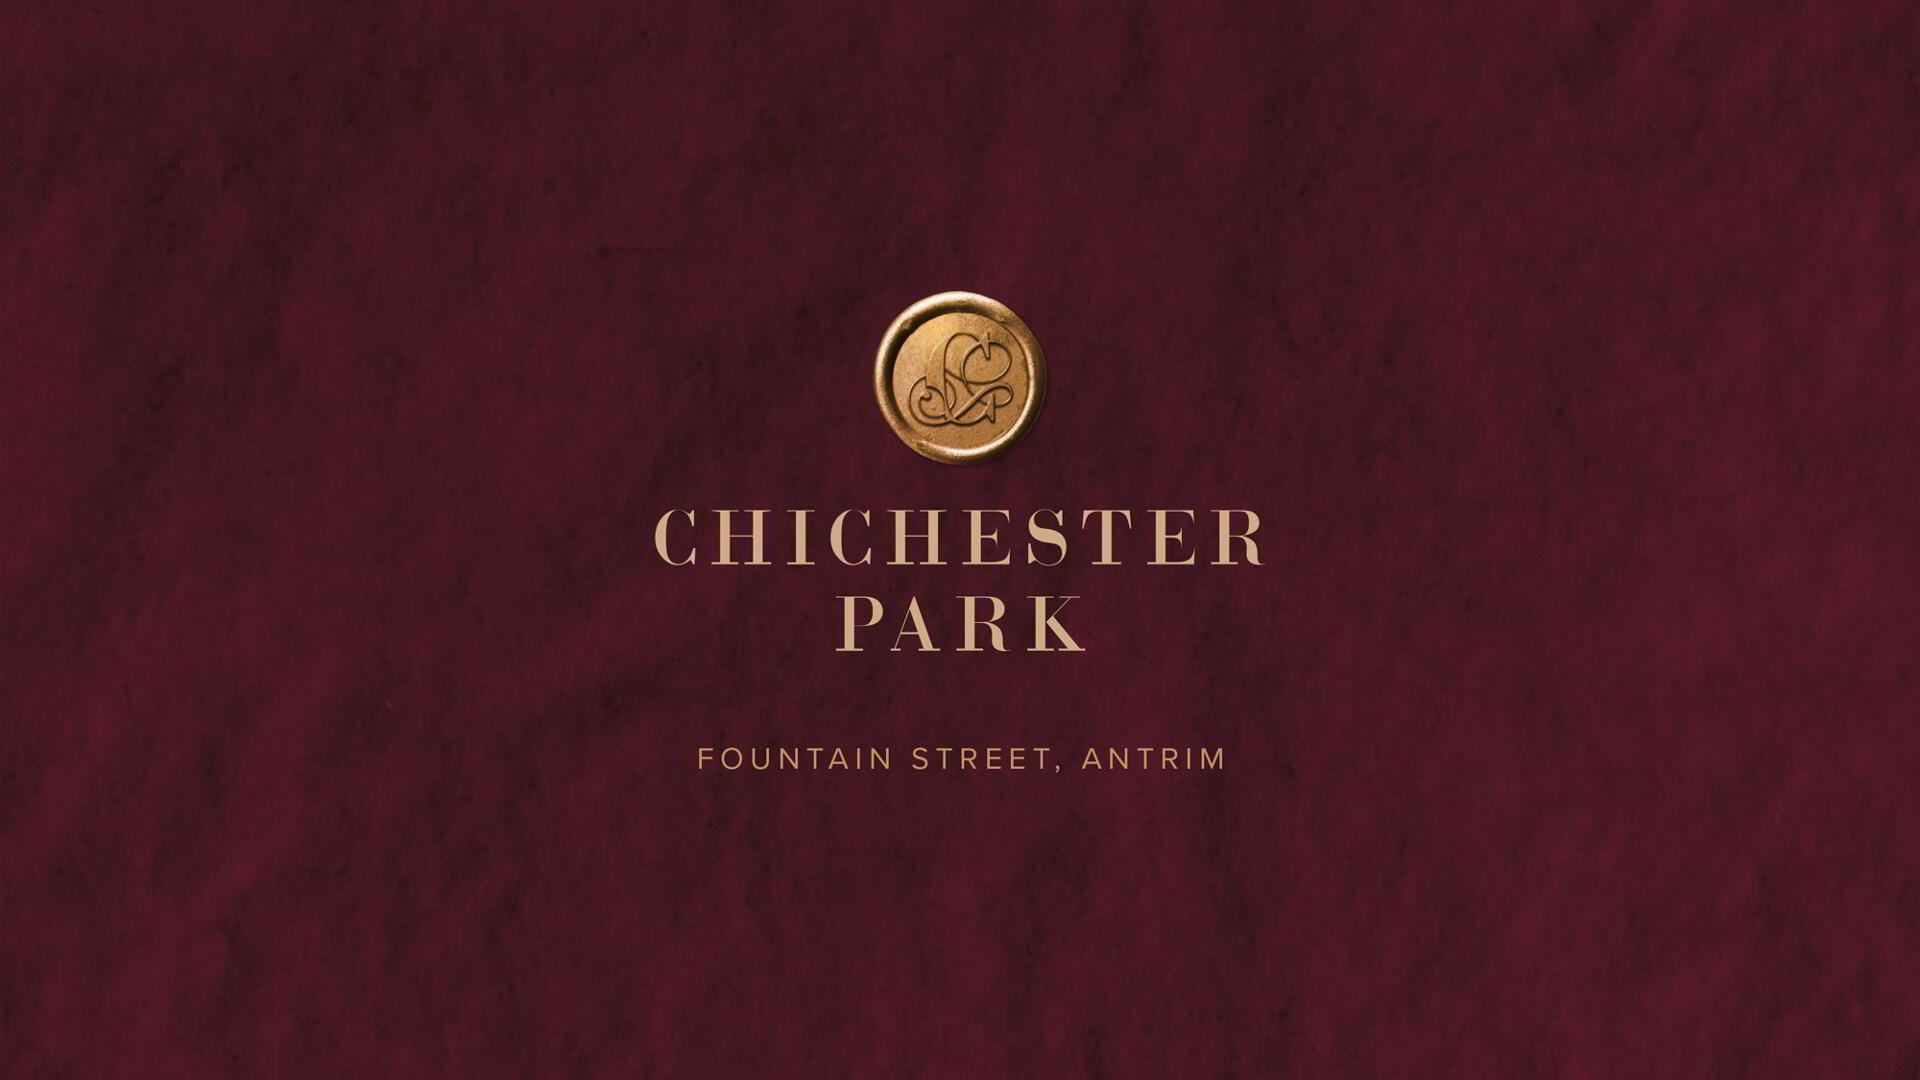 Chichester Park, Antrim